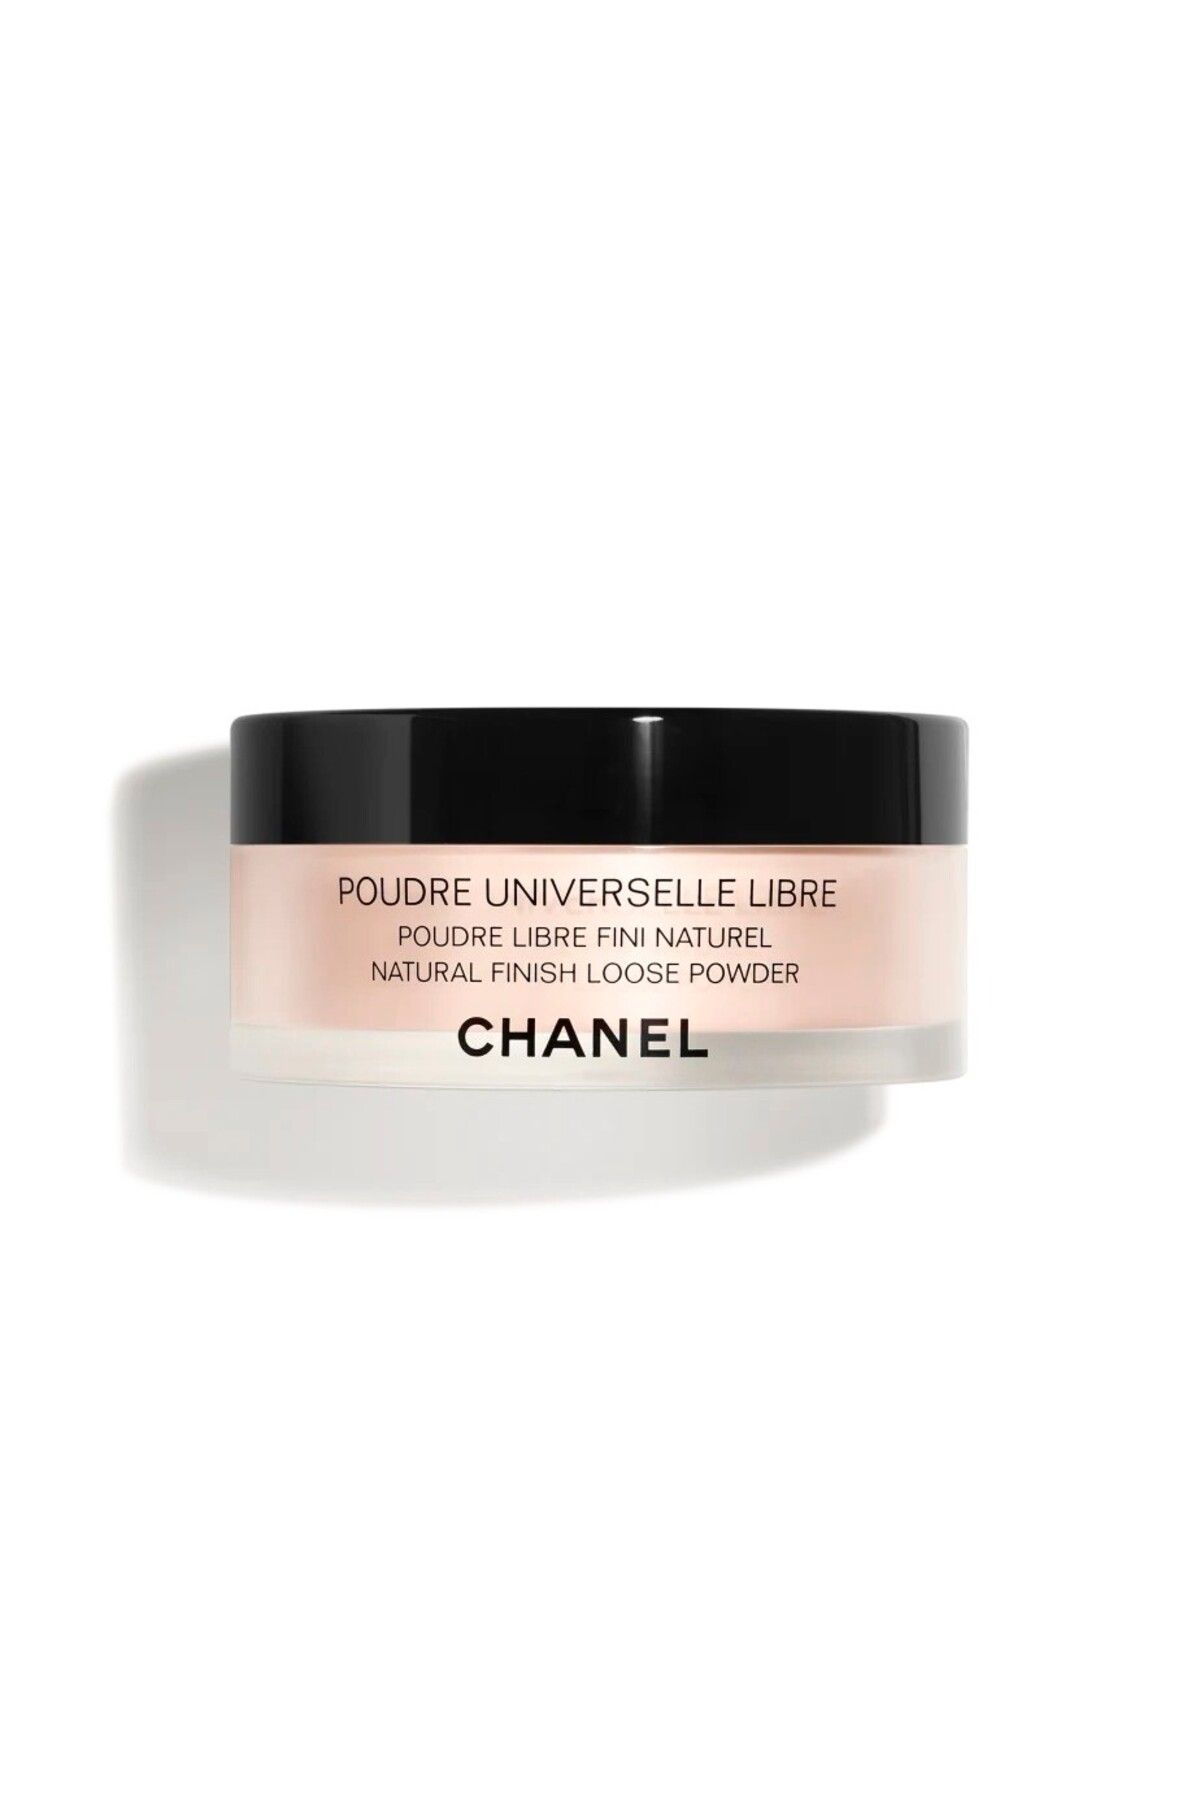 Chanel DOĞAL SONUÇ İÇİN TOZ PUDRA - POUDRE UNIVERSELLE LIBRE - 12